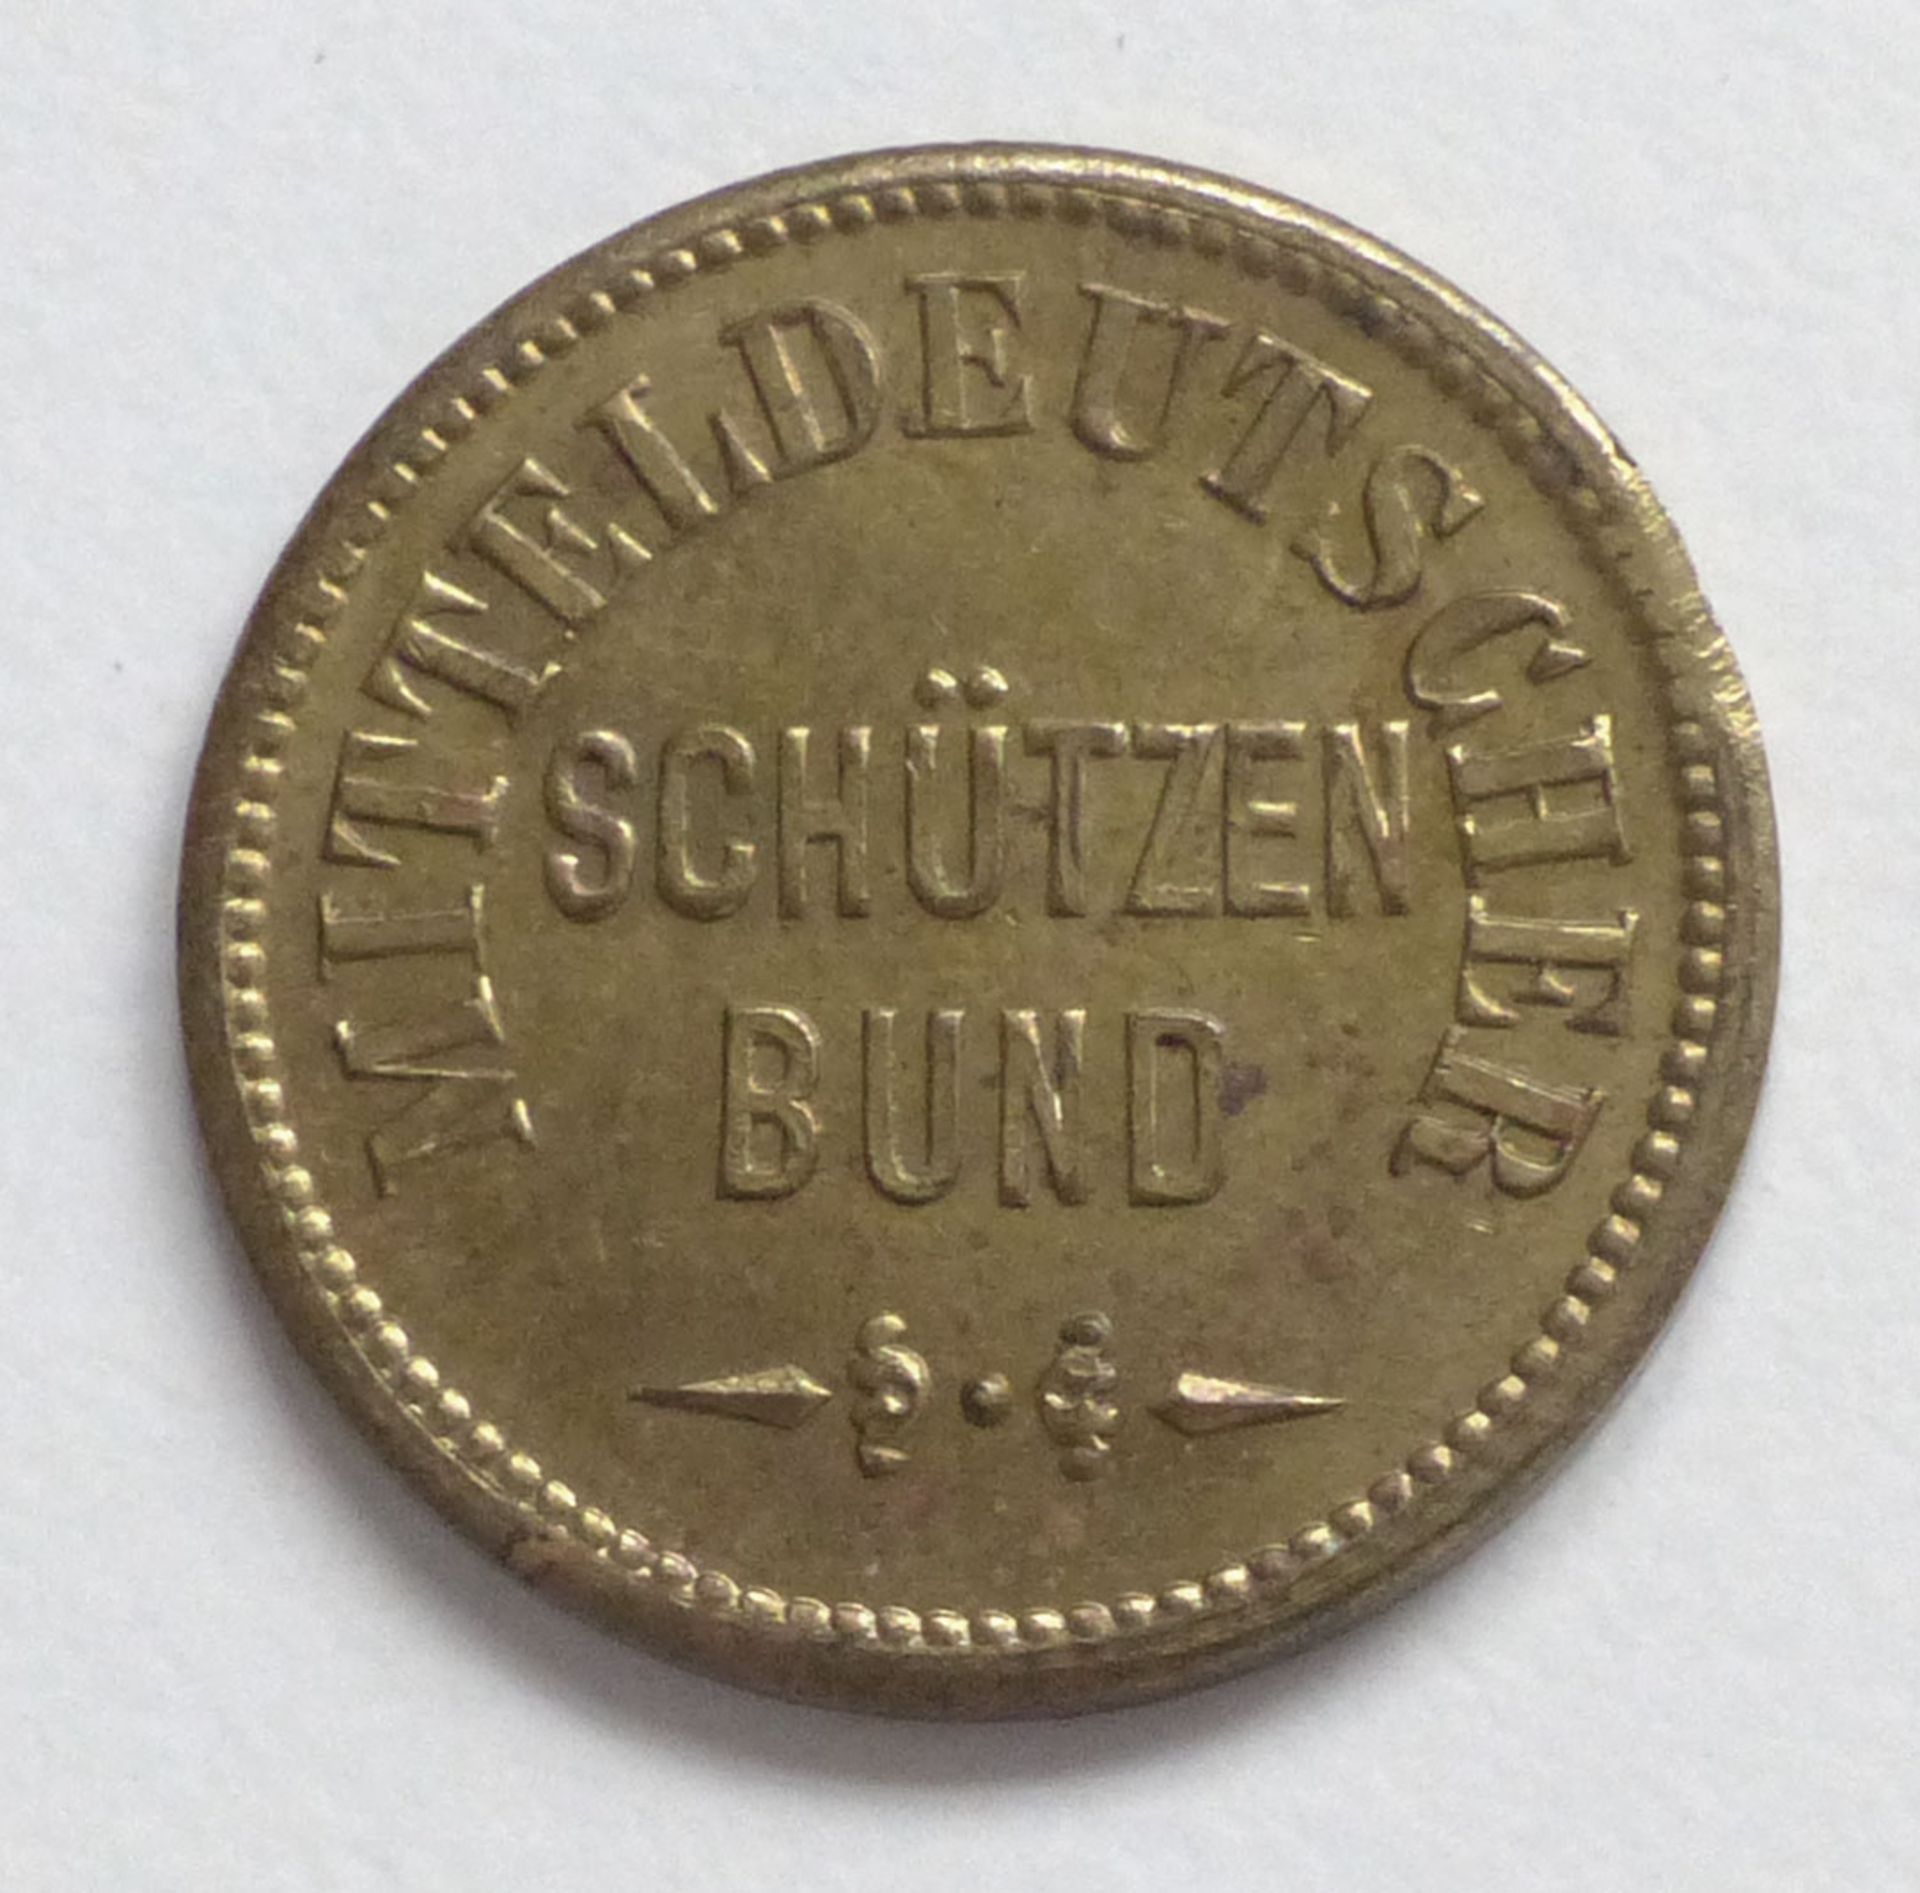 Schützen Mitteldeutscher Schützenbund Schussmarke 20 mm Durchm. I-II